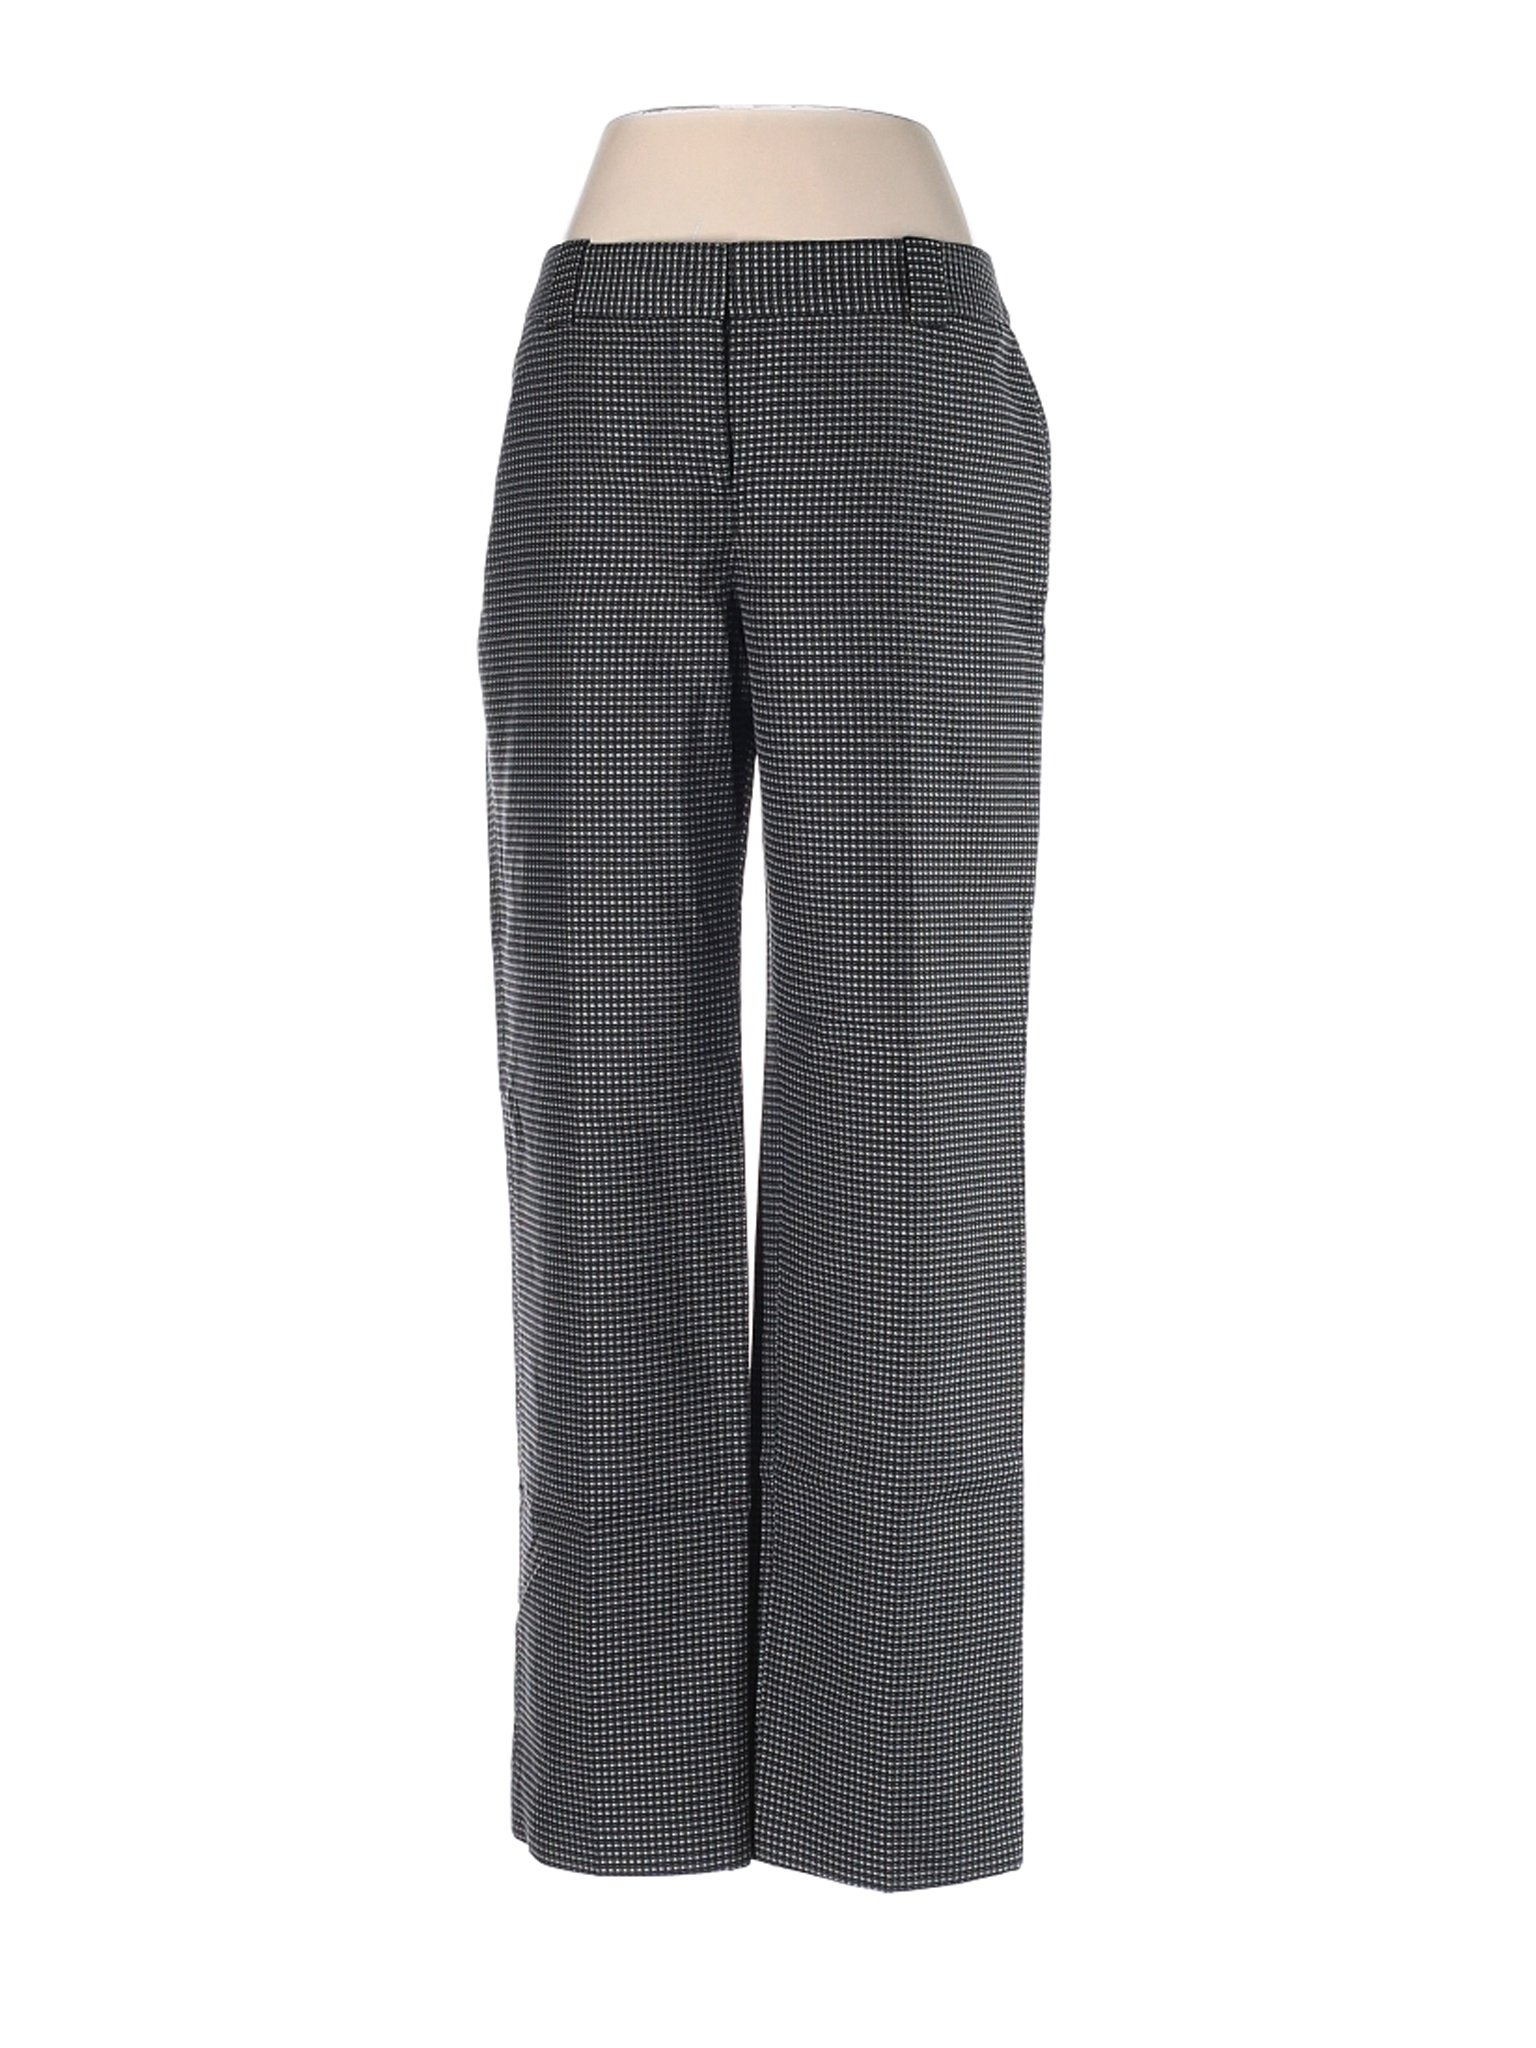 Ann Taylor Women Gray Silk Pants 4 Petites | eBay